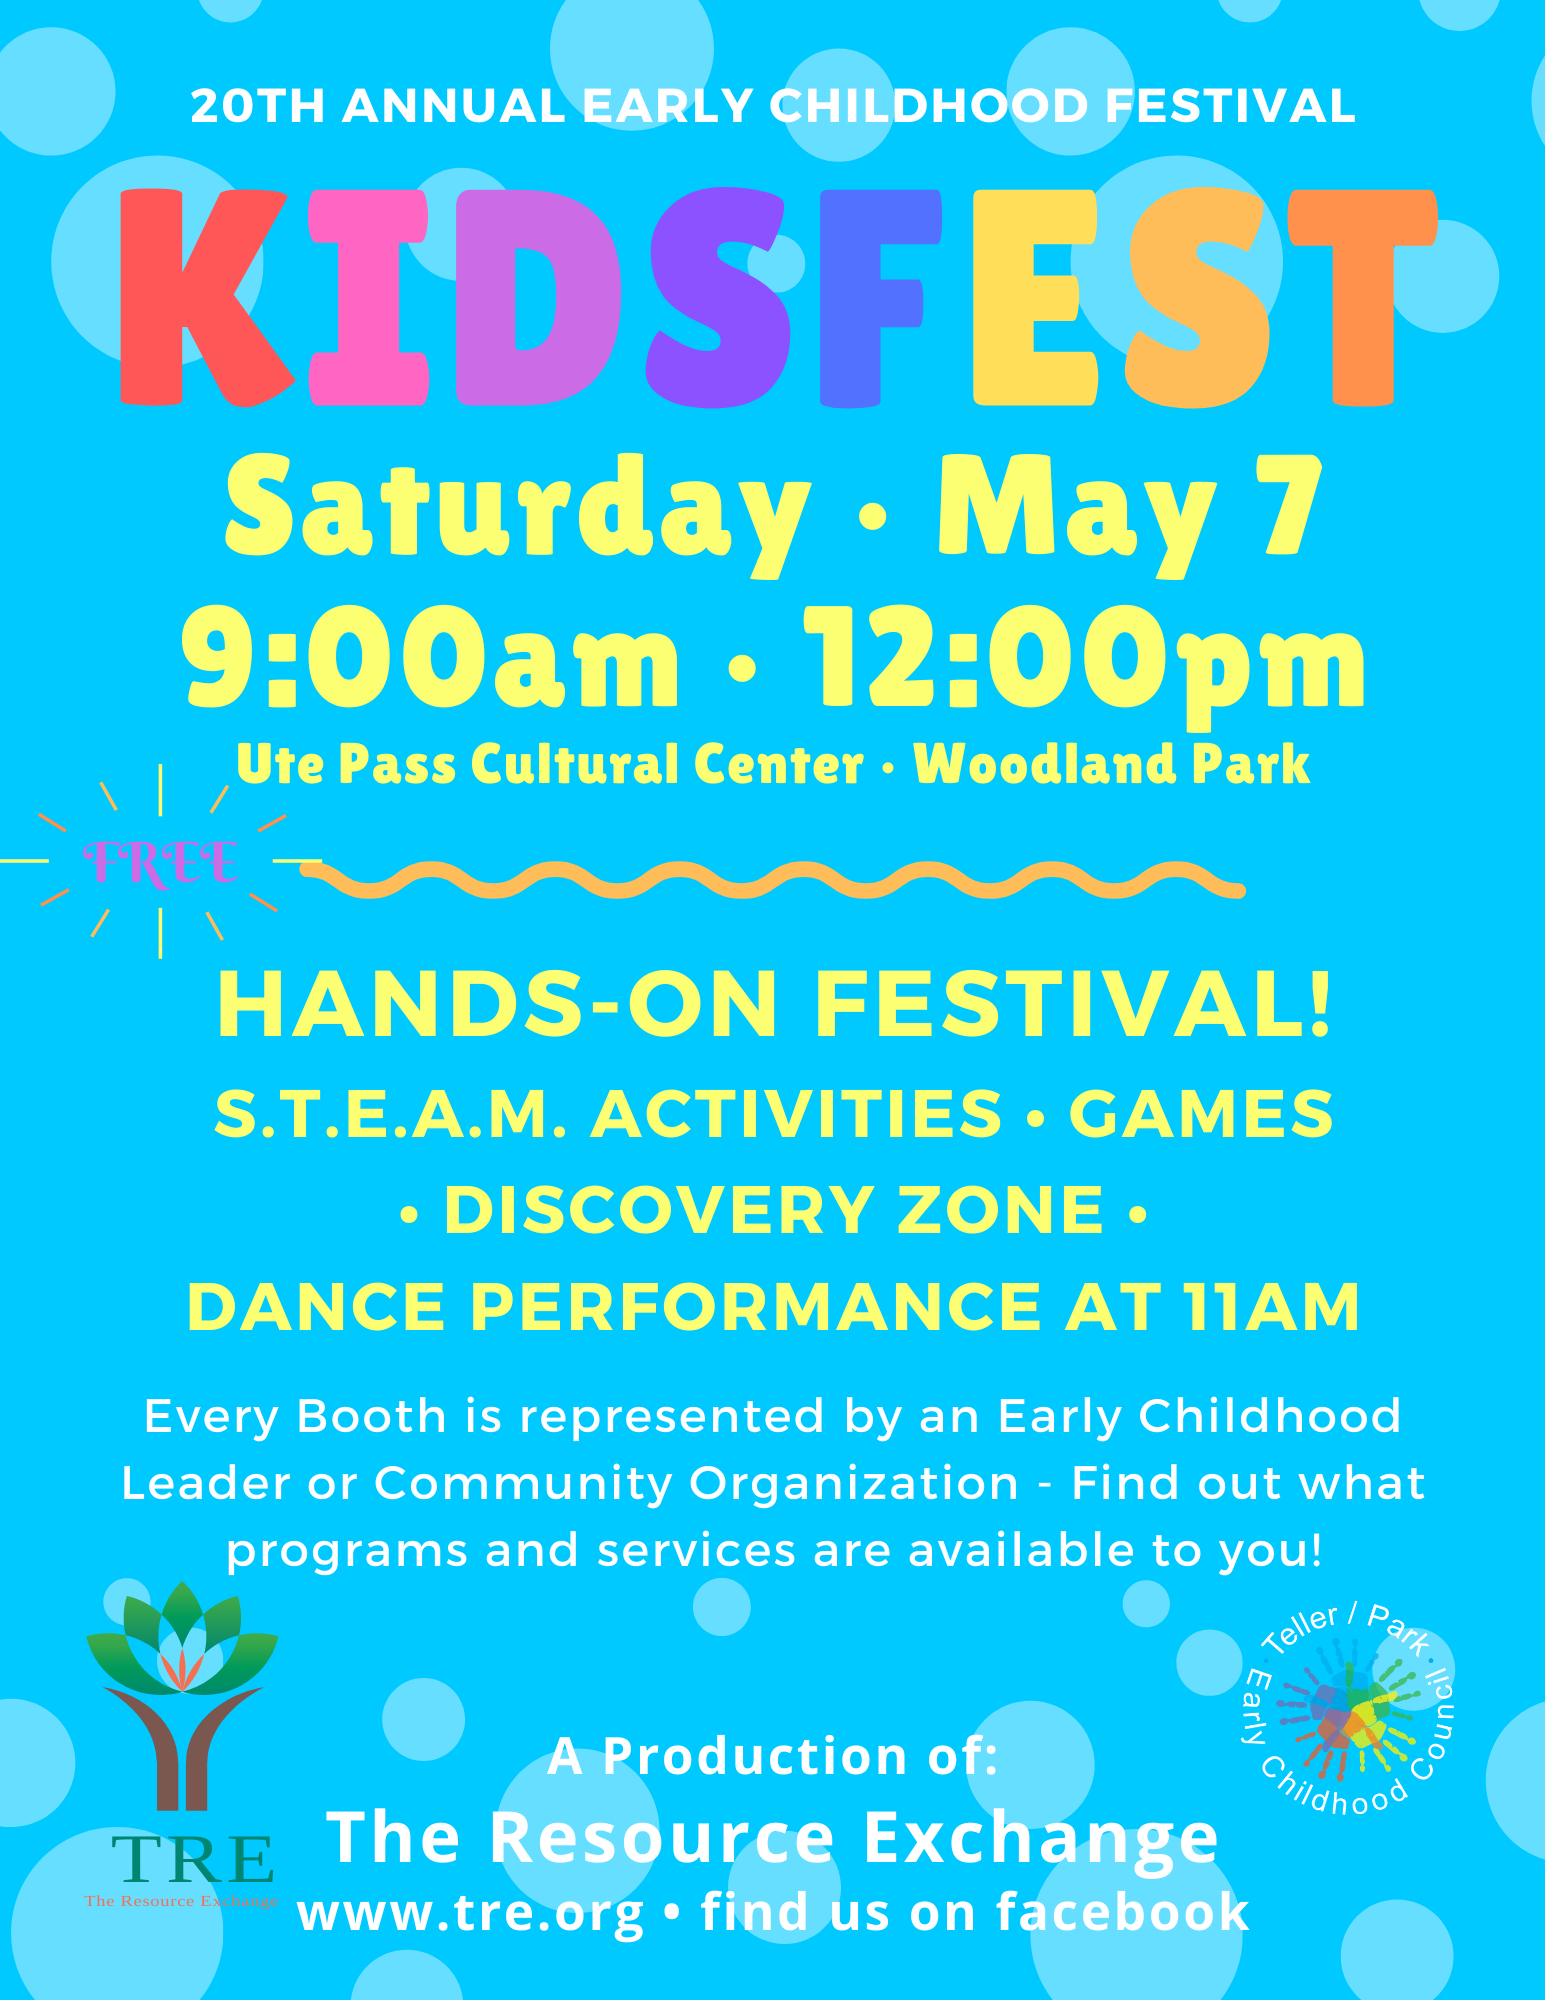 Early Childhood Festival - Kidsfest